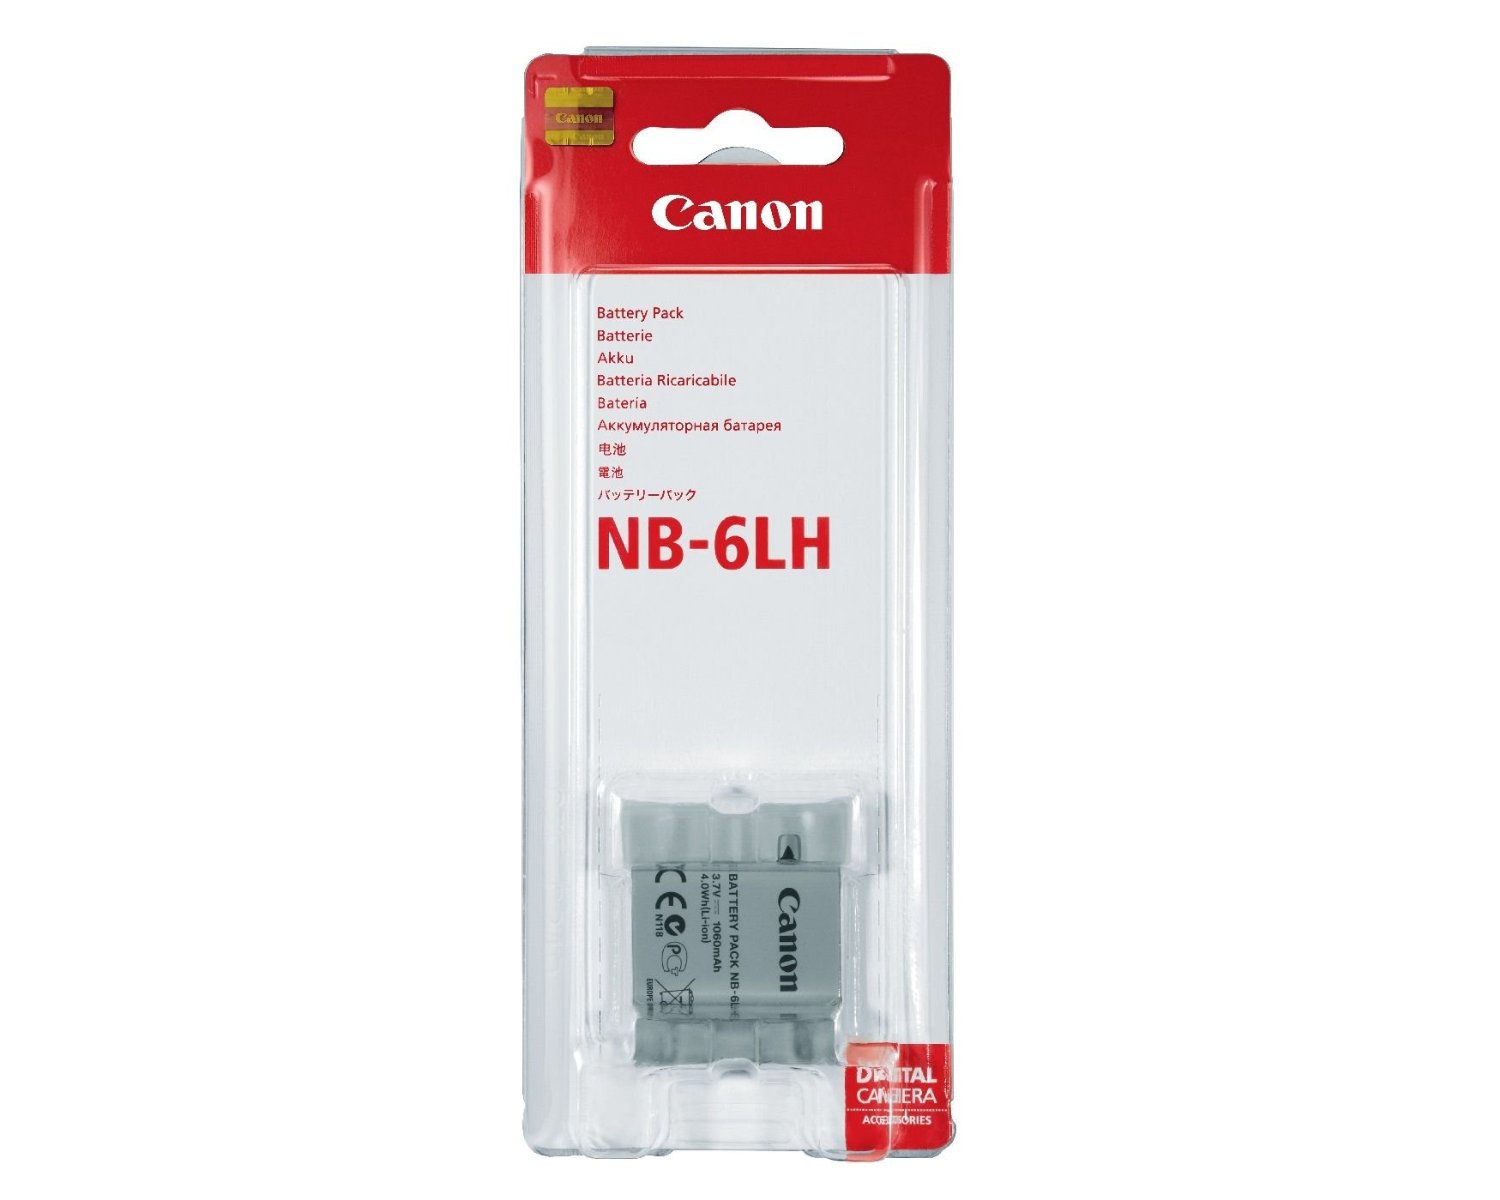 Pack de baterías Canon NB-6LH